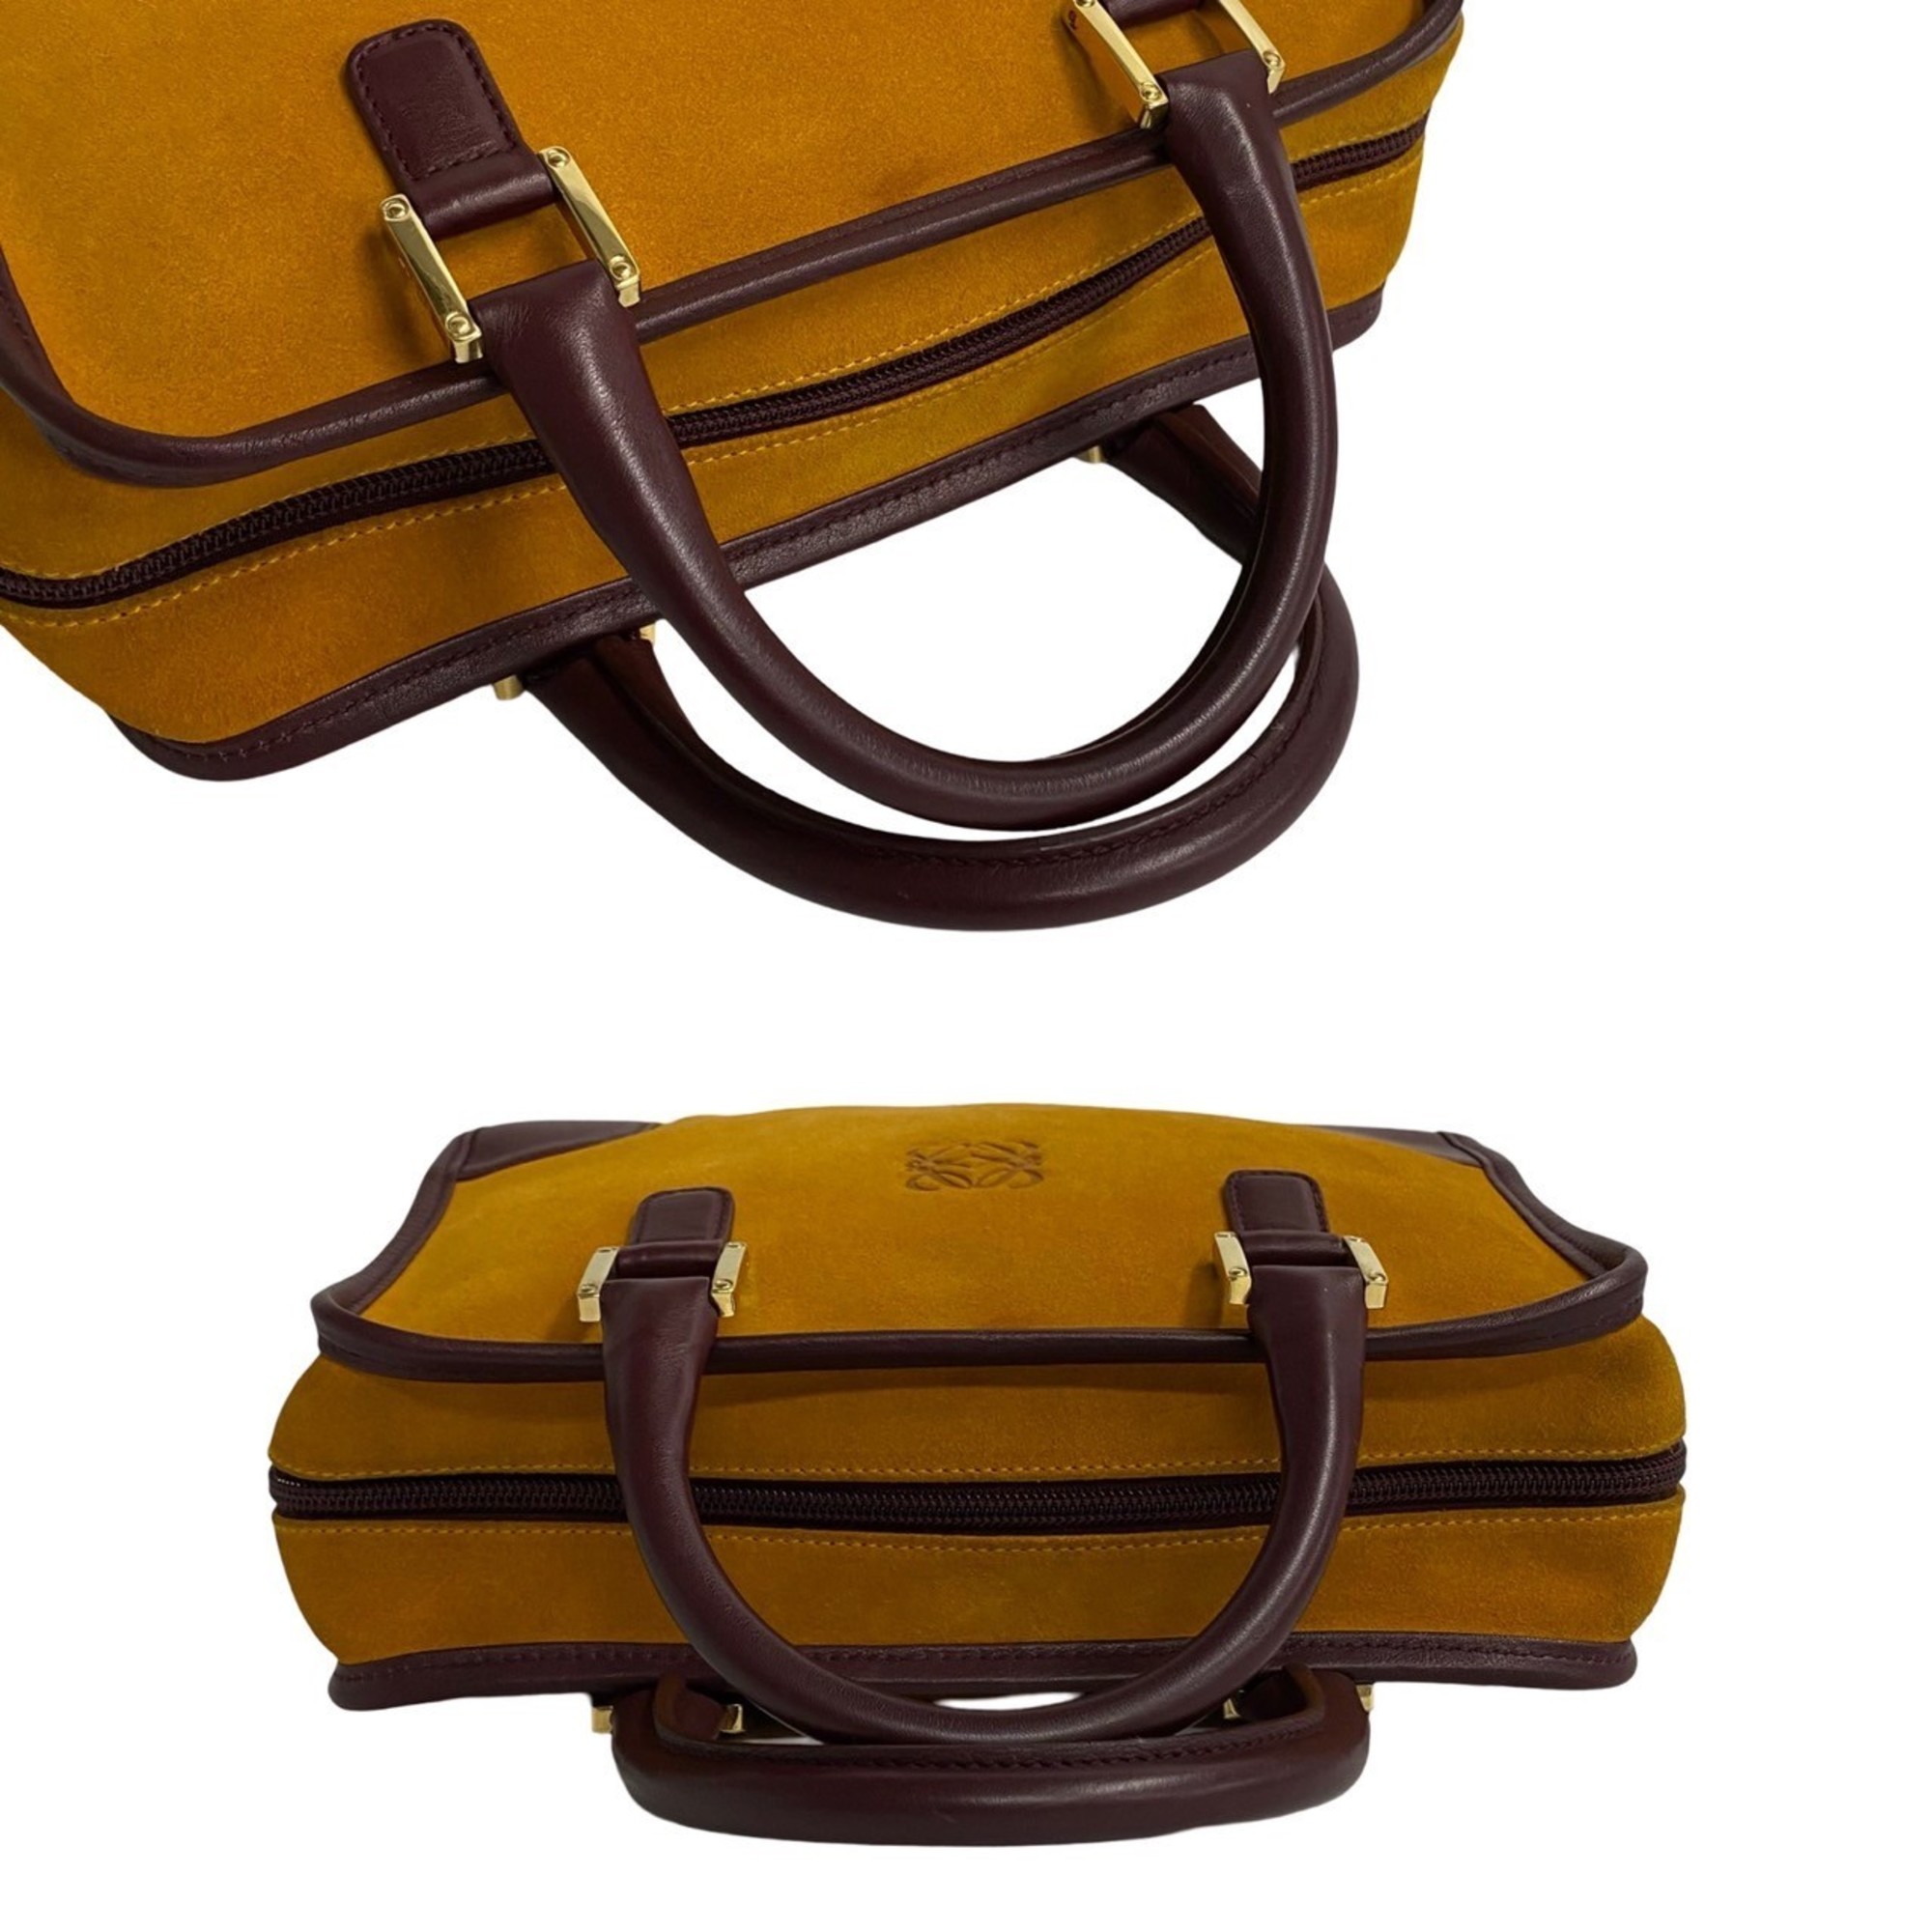 LOEWE Amazona 28 Anagram Suede Leather Boston Bag Handbag Mustard Yellow 29280